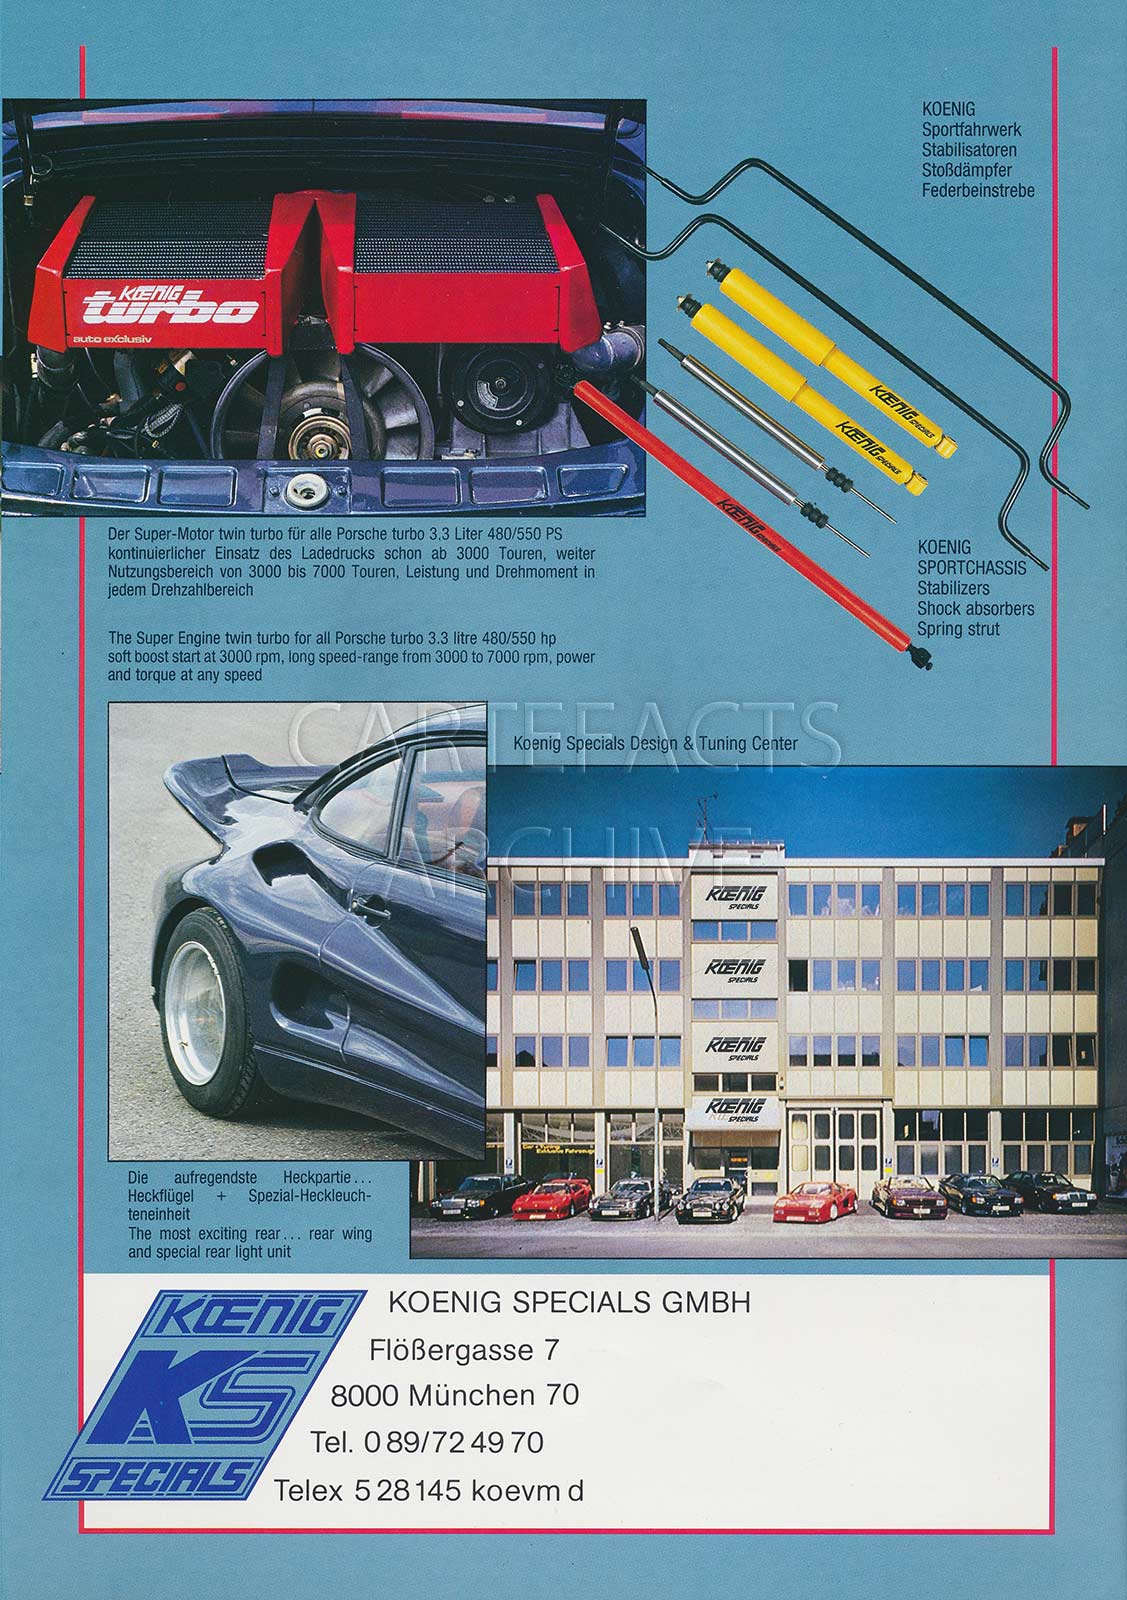 Koenig Special Turbo Road Runner (Porsche 930 based) from 80s